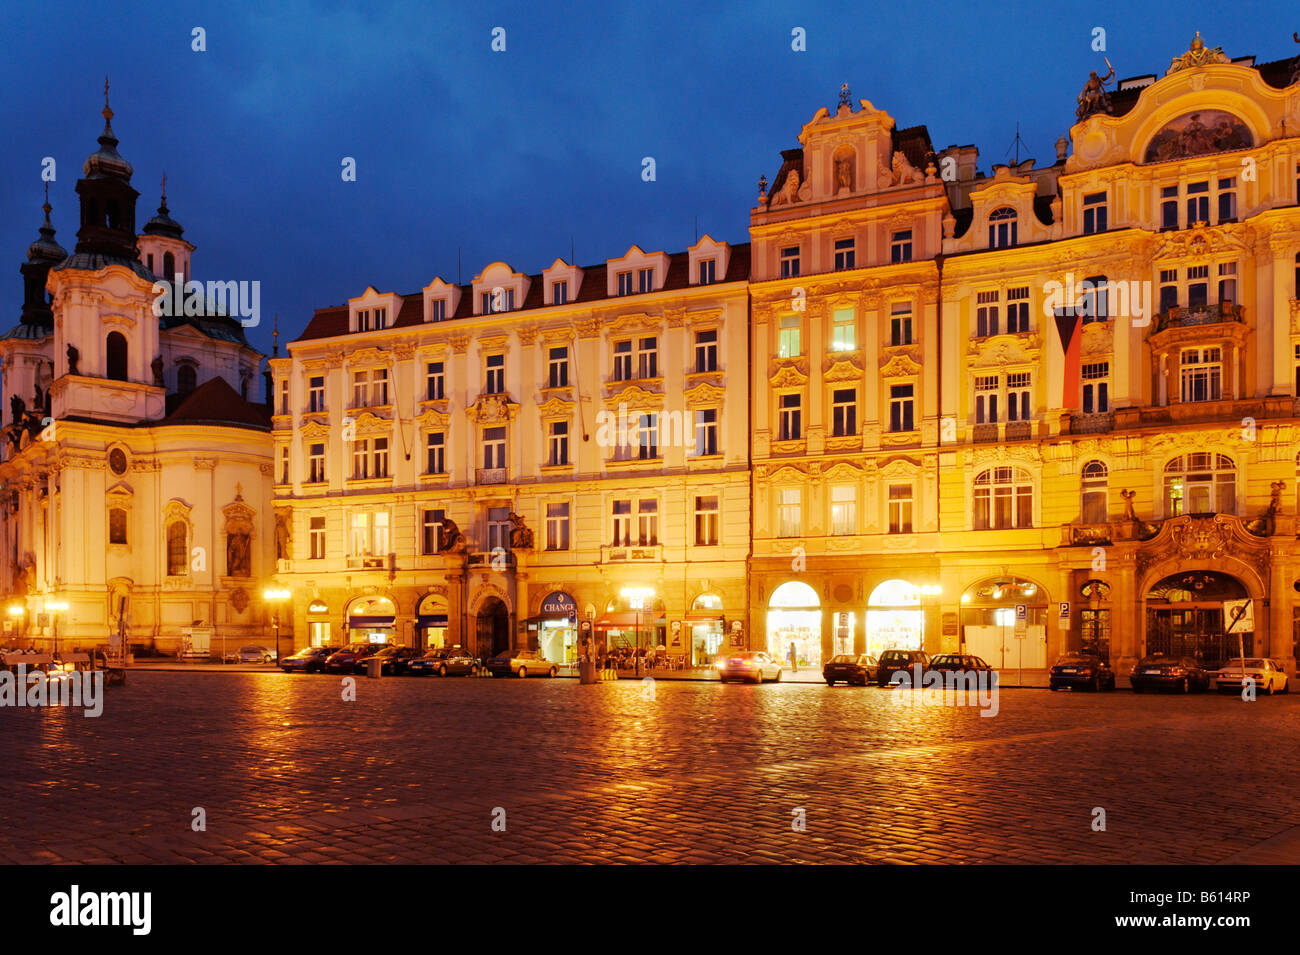 Historischen Altstädter Ring beleuchtet, Prag, UNESCO-Weltkulturerbe, Tschechische Republik, Europa Stockfoto